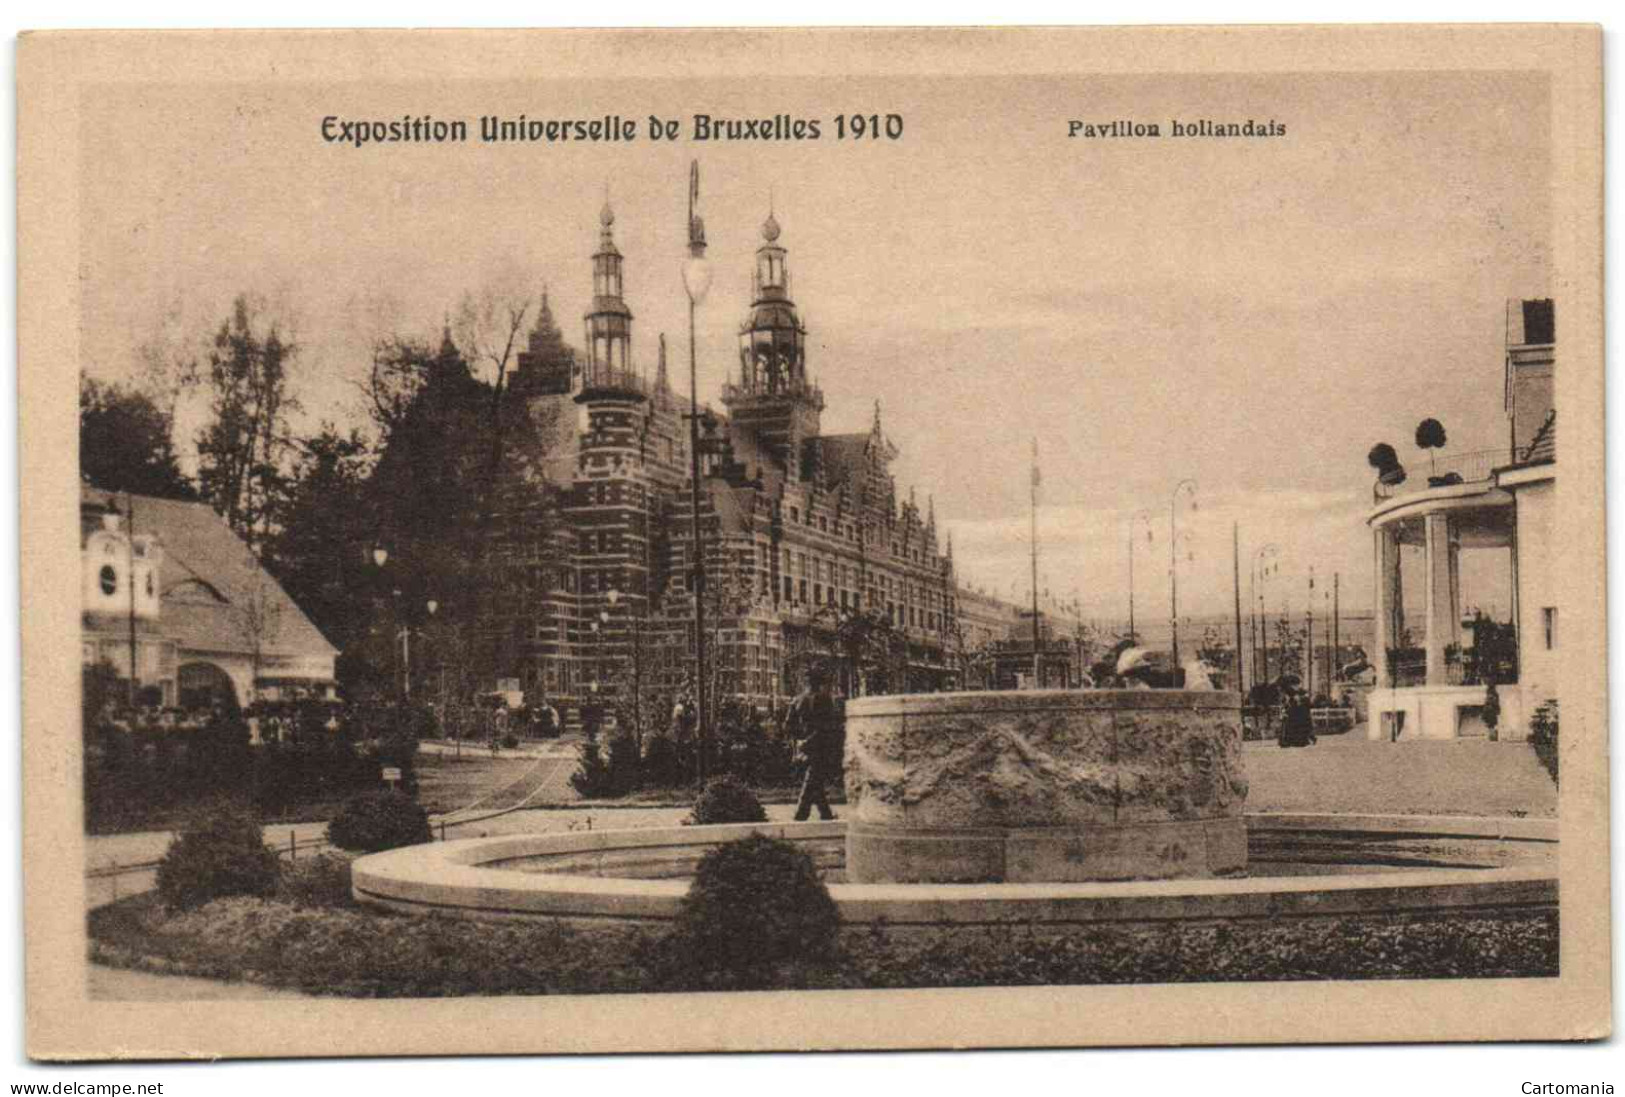 Exposition Universelle De Bruxelles 1910 - Pavillon Hollandais - Expositions Universelles